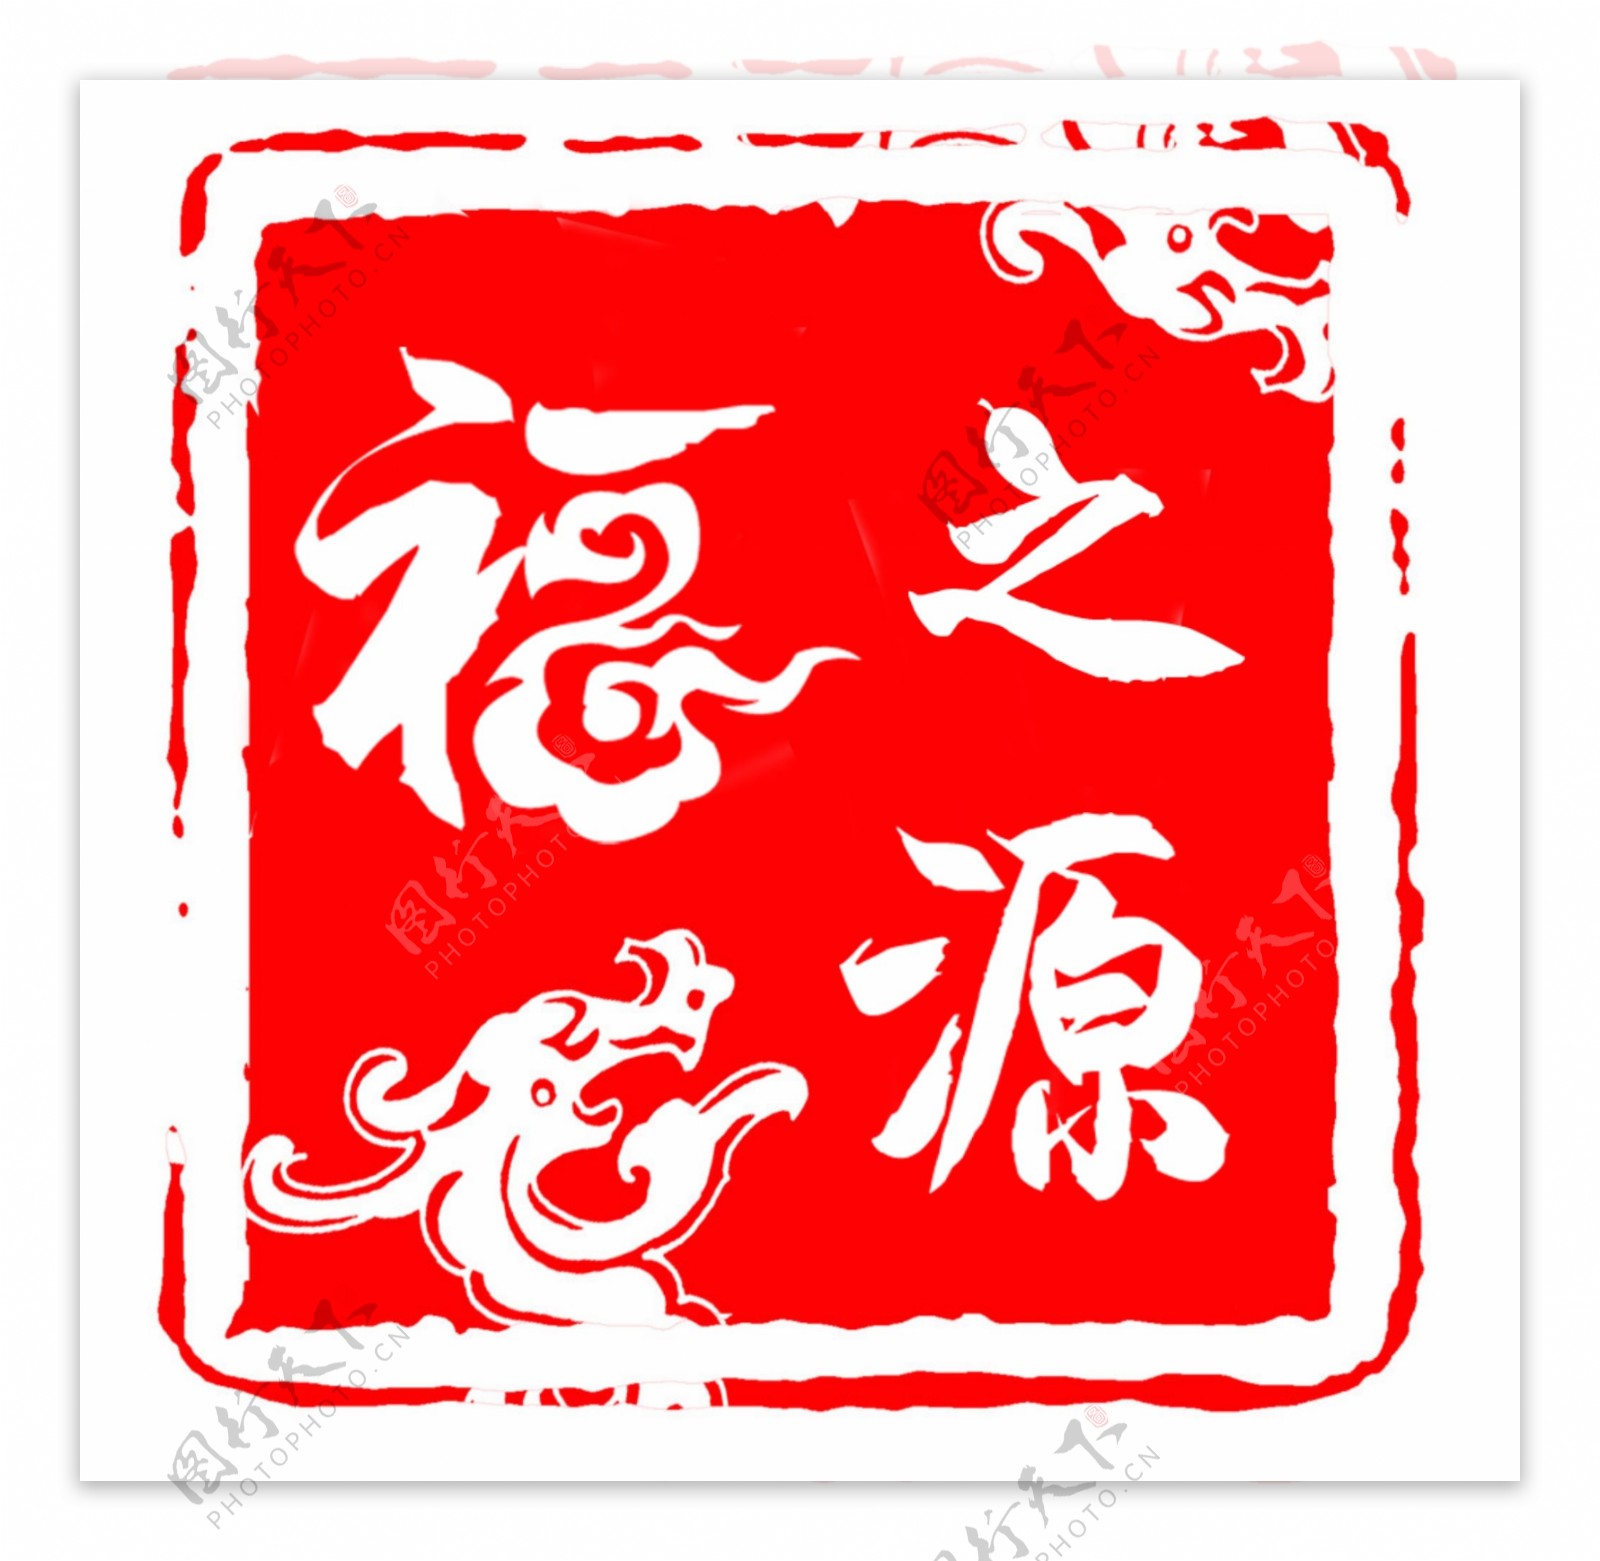 福之源茶logo图片